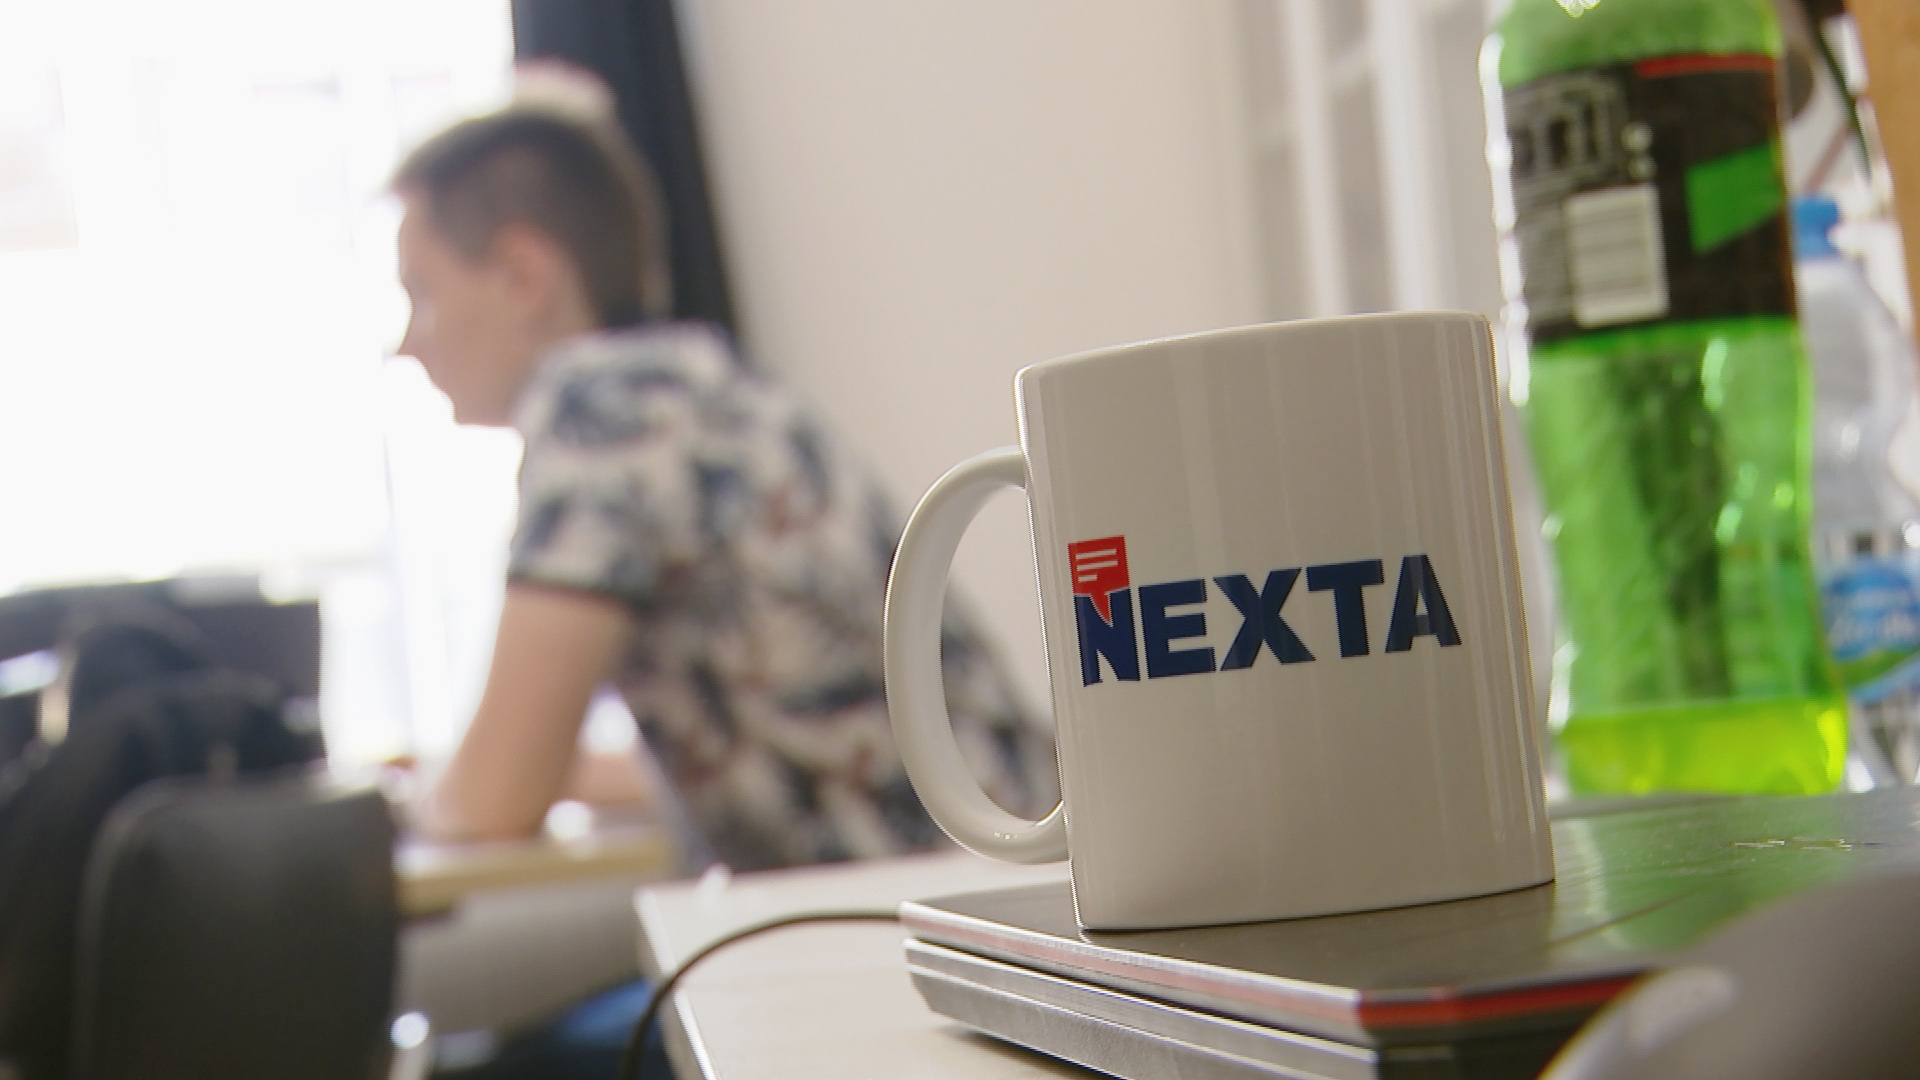 Ein Becher mit der Aufschrift "Nexta" | Bettina Scharkus